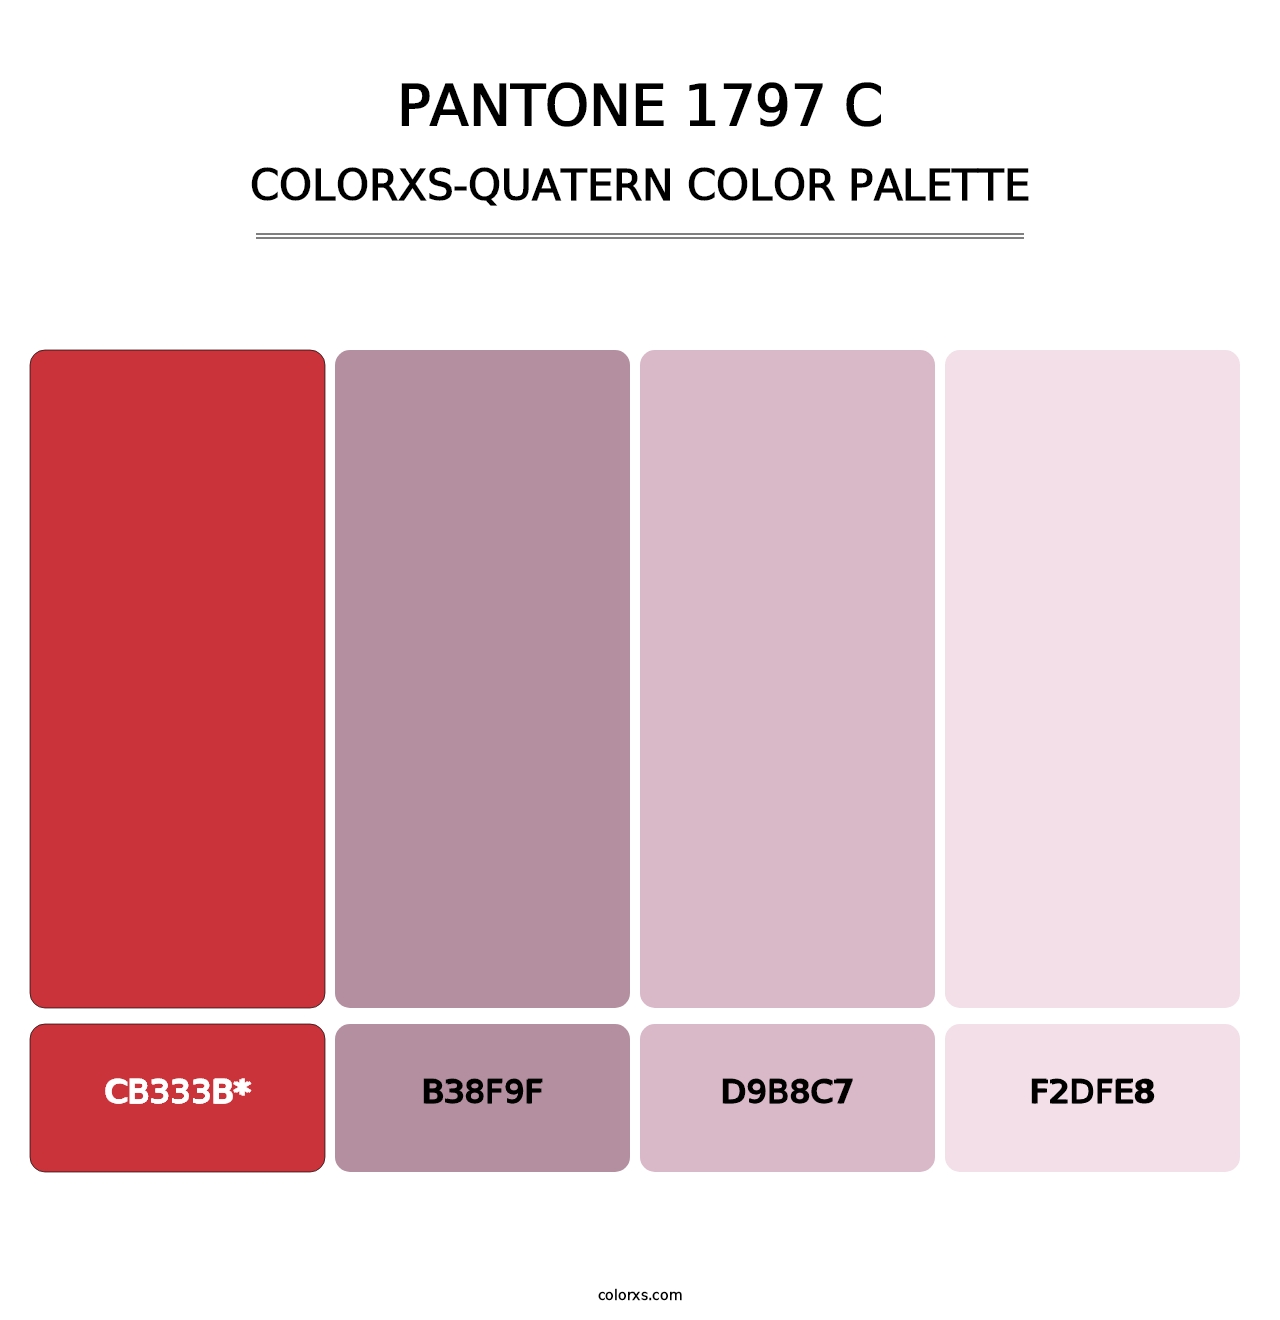 PANTONE 1797 C - Colorxs Quatern Palette